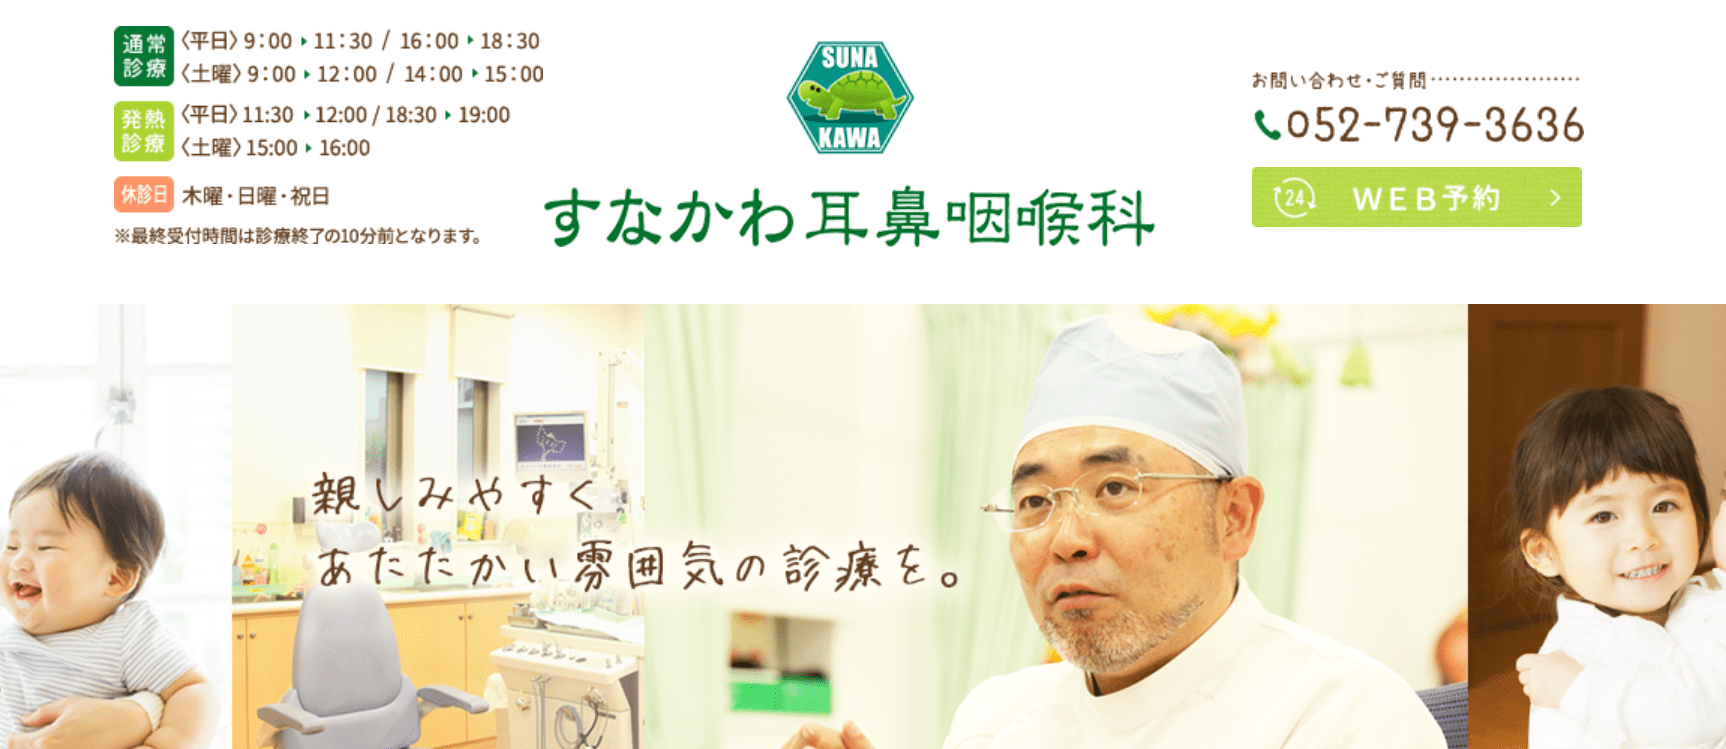 名古屋市で評判の耳鼻咽喉科クリニックおすすめ10選 すなかわ耳鼻咽喉科